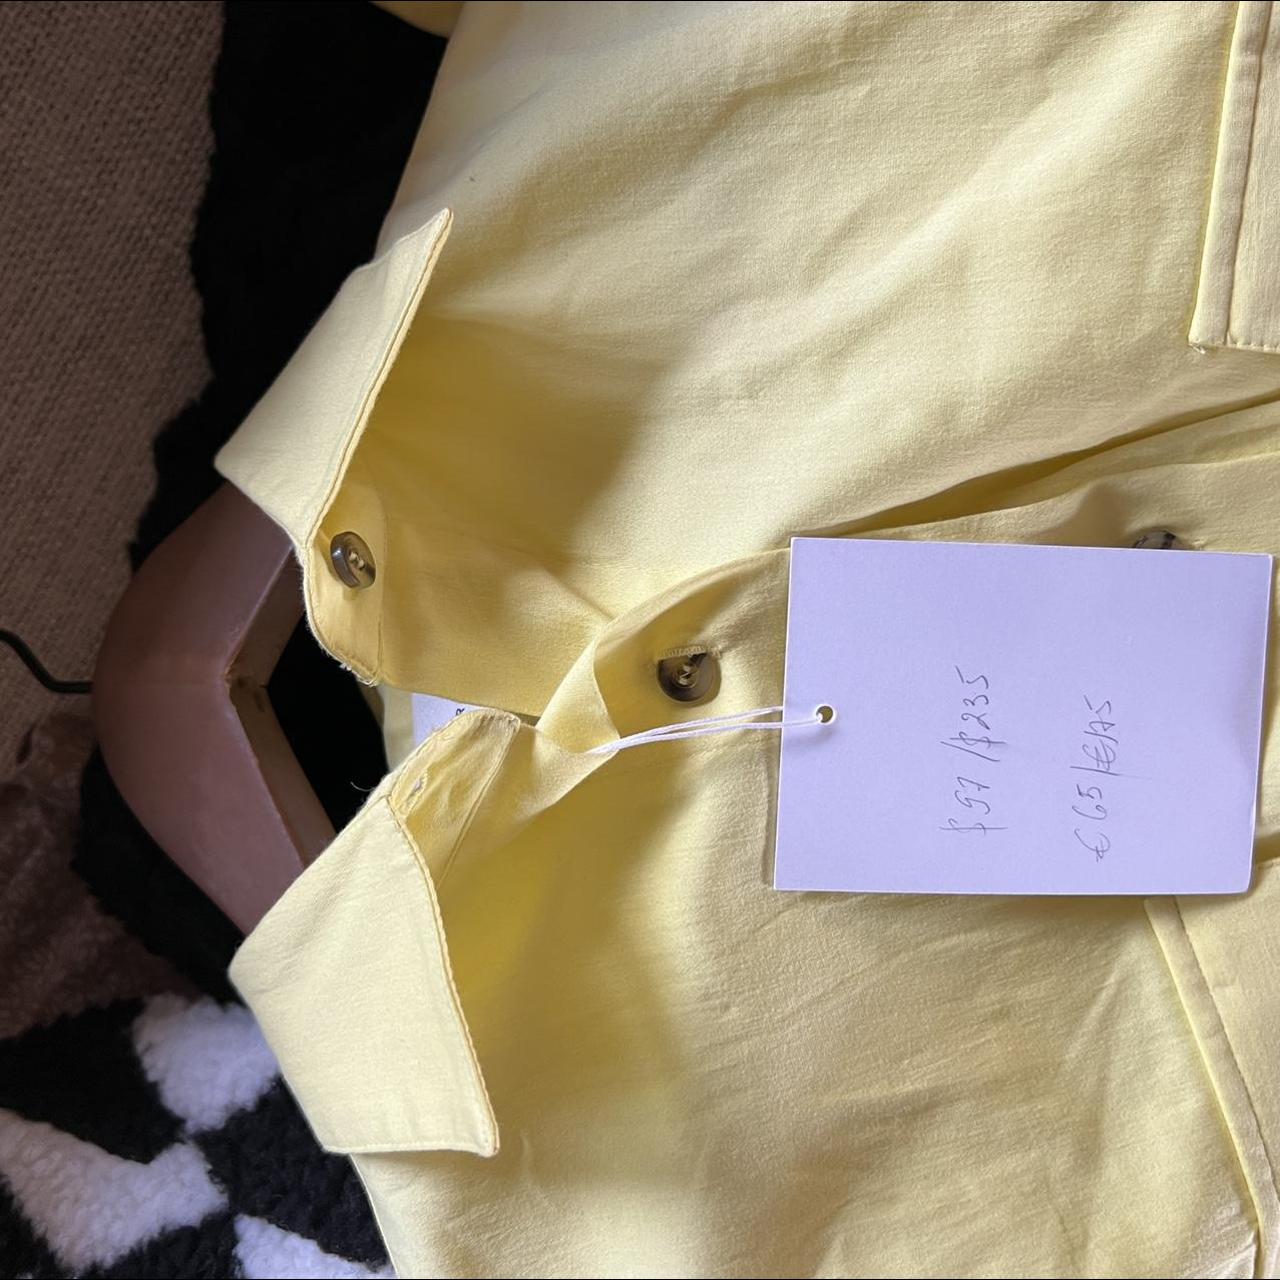 Hosbjerg Women's Cream and Yellow Dress (3)